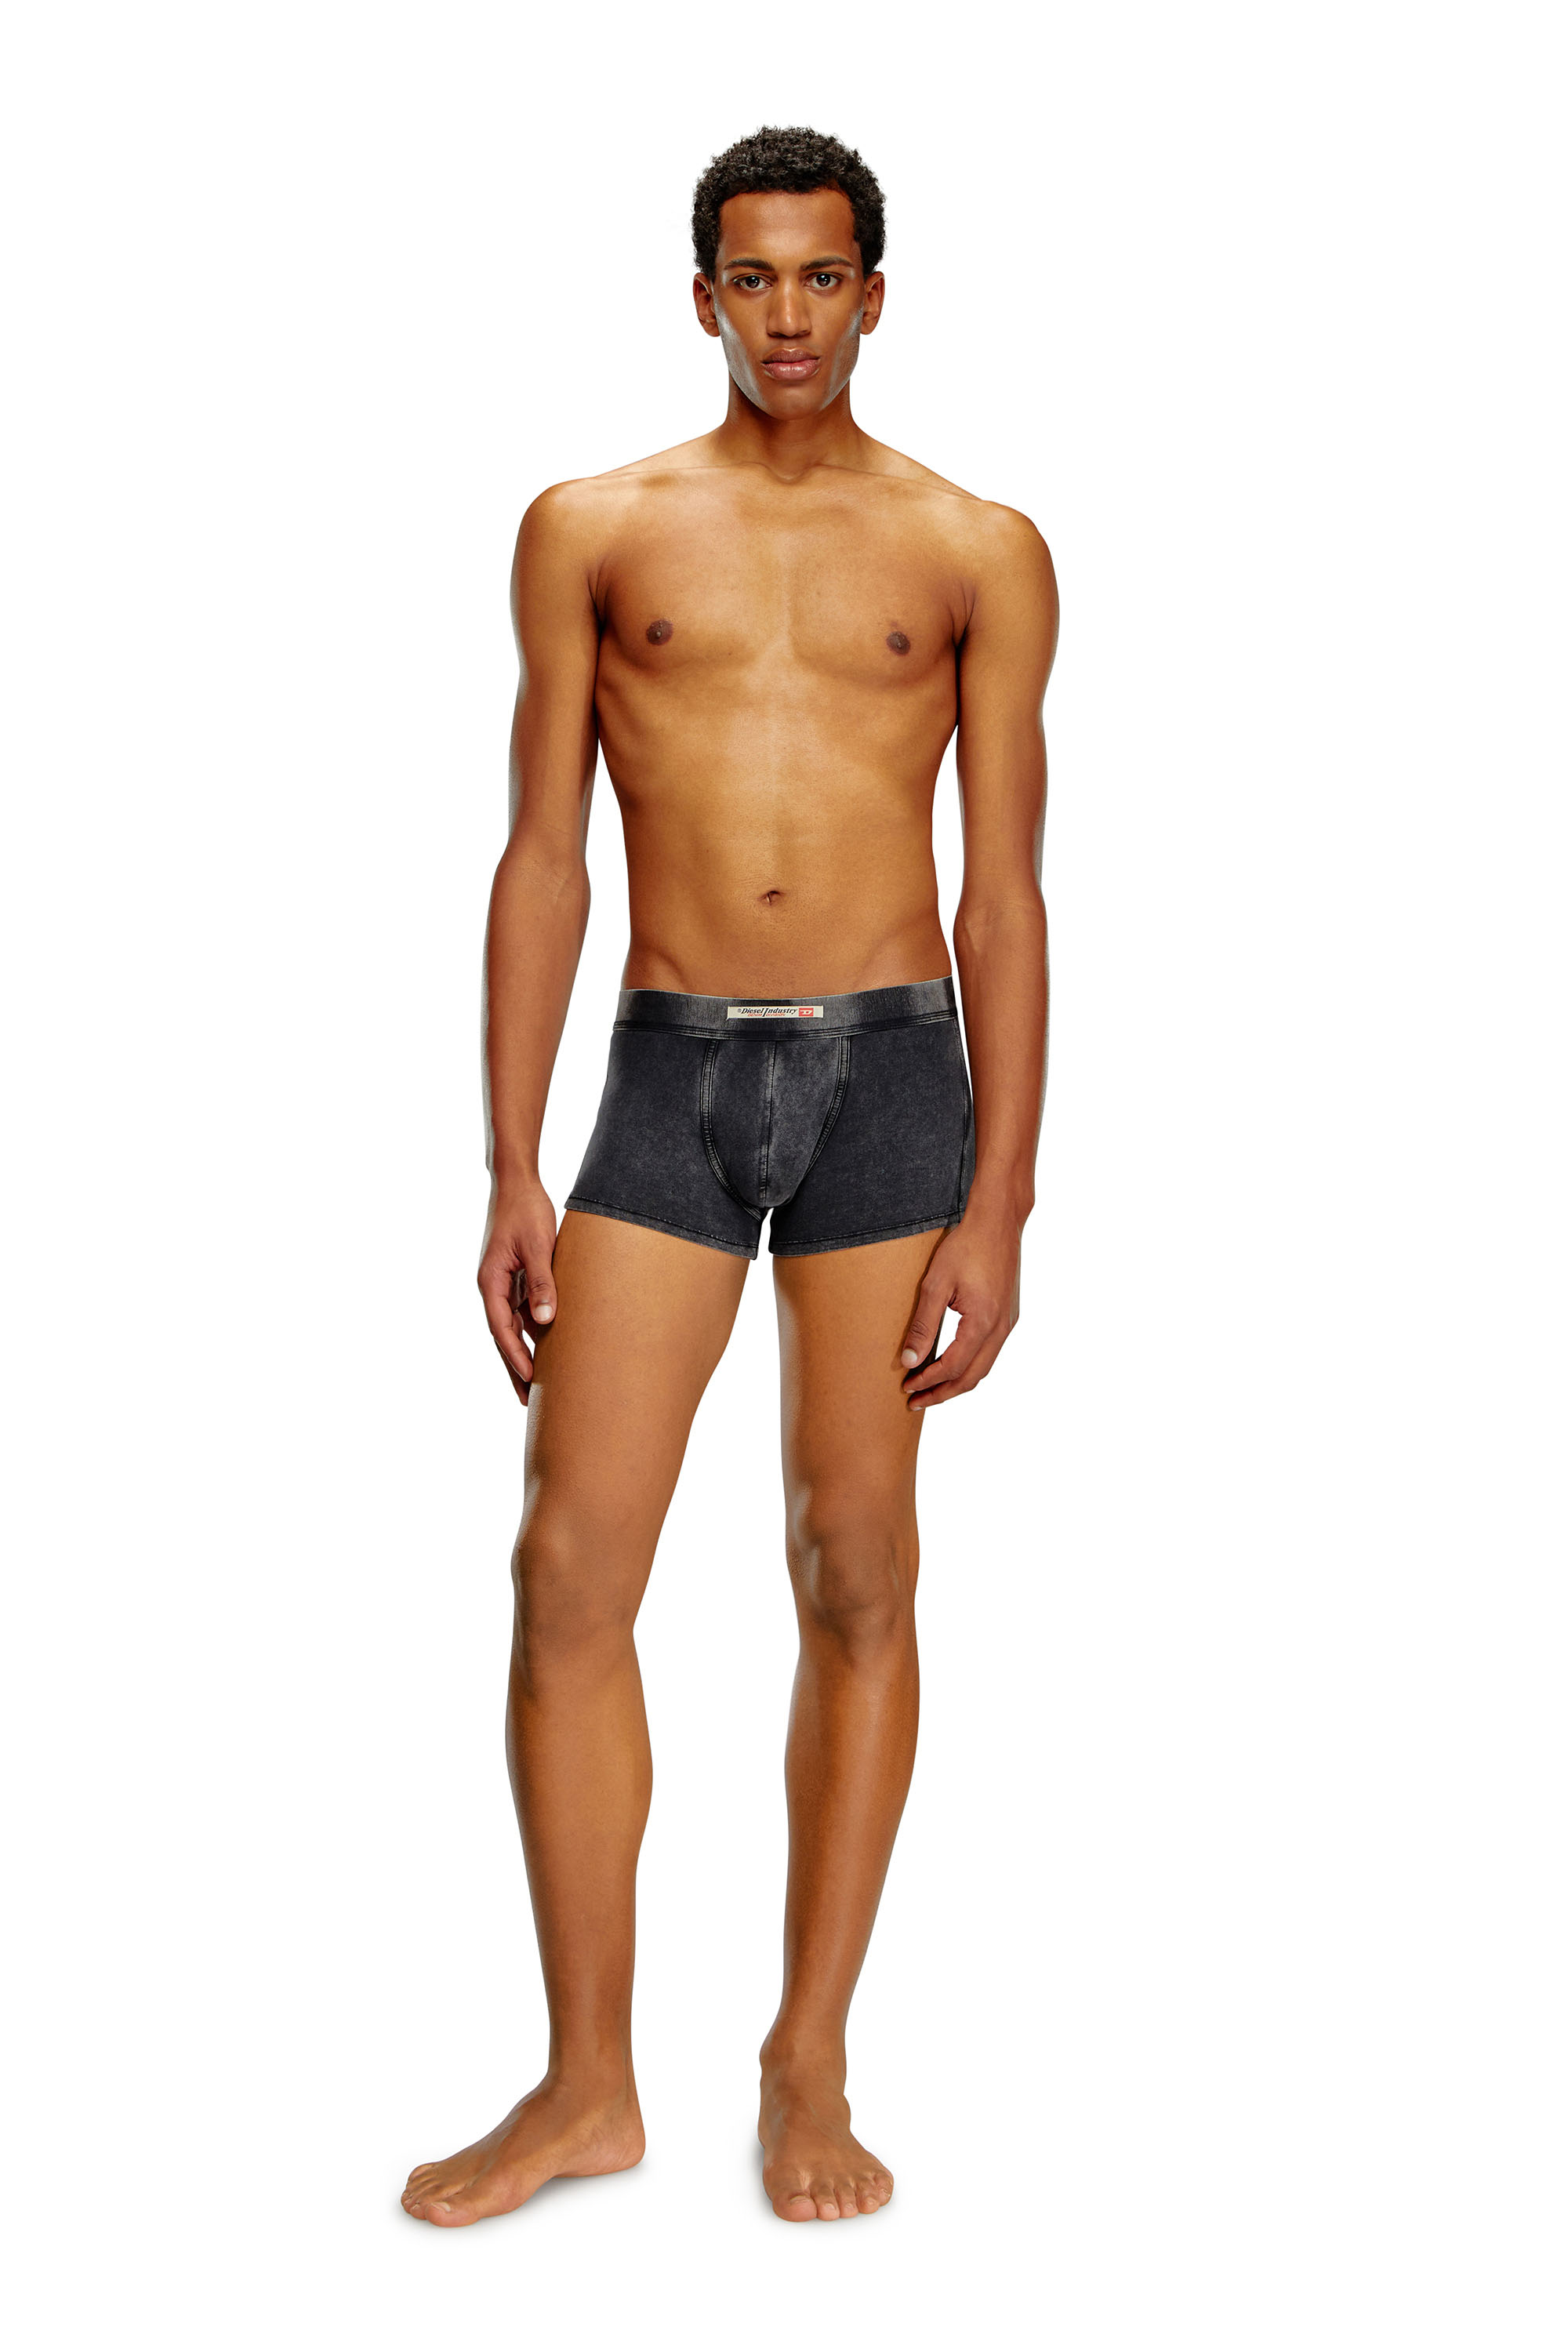 Men's Designer Underwear, Slim-Fit Boxers Midnight Blue Solid